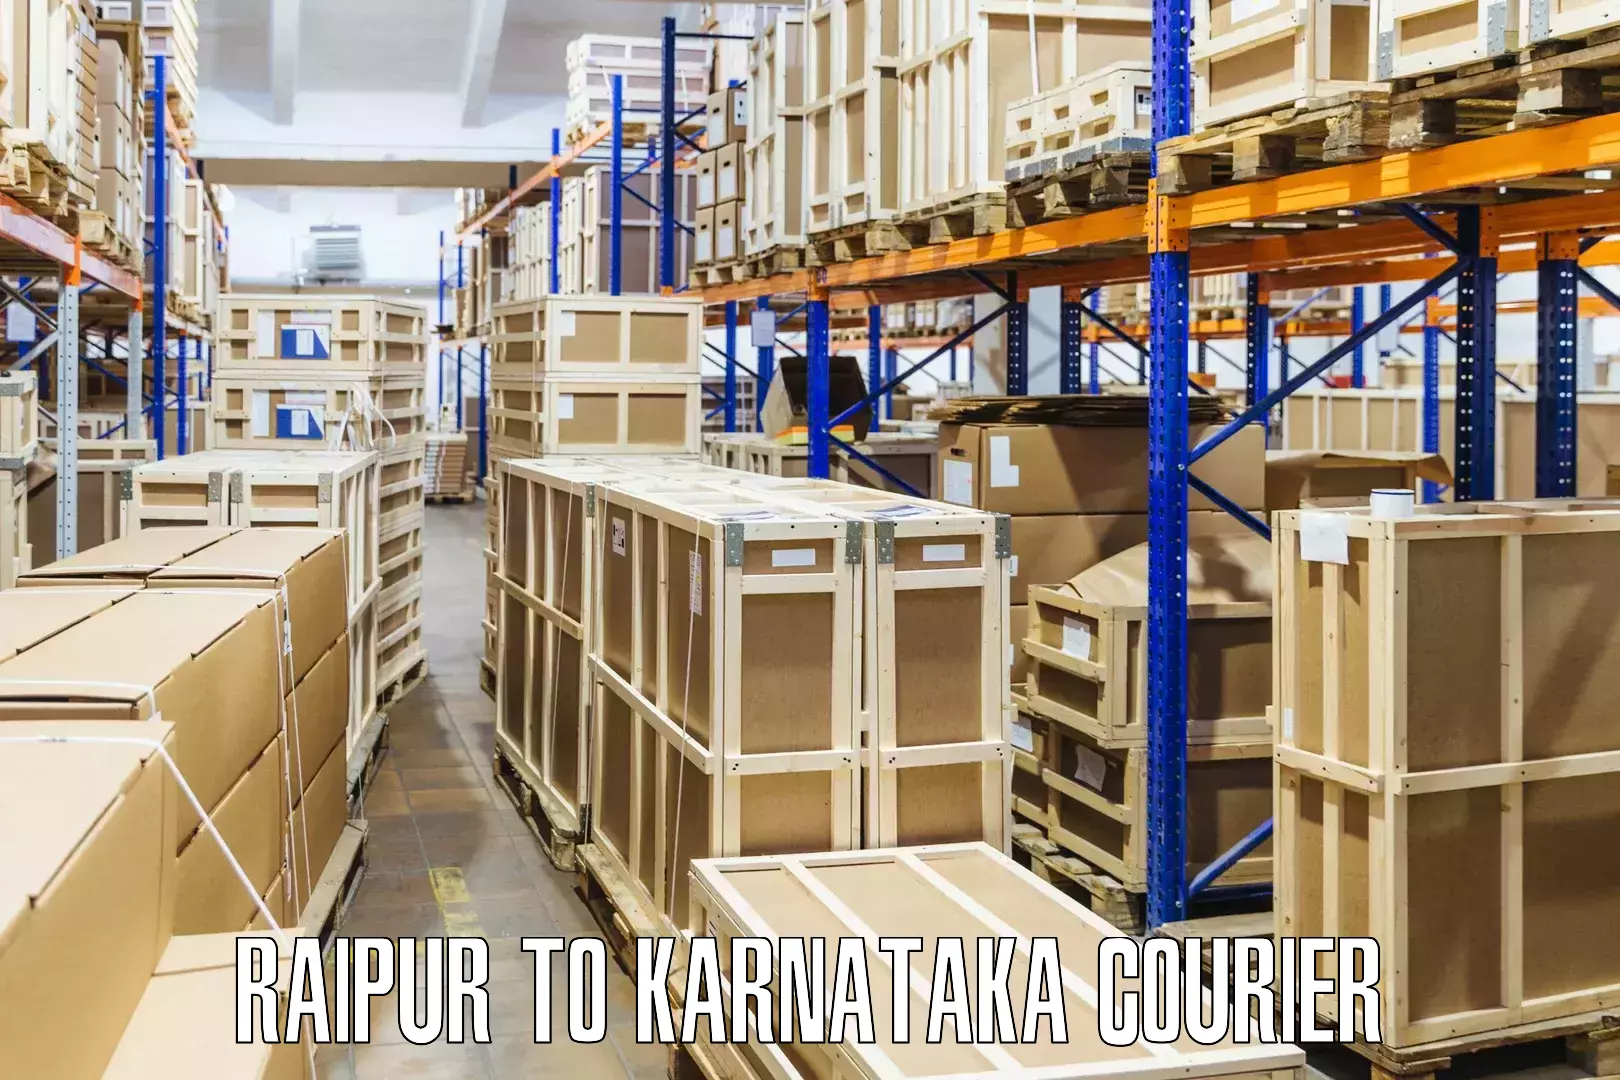 Premium courier solutions Raipur to Mangalore Port